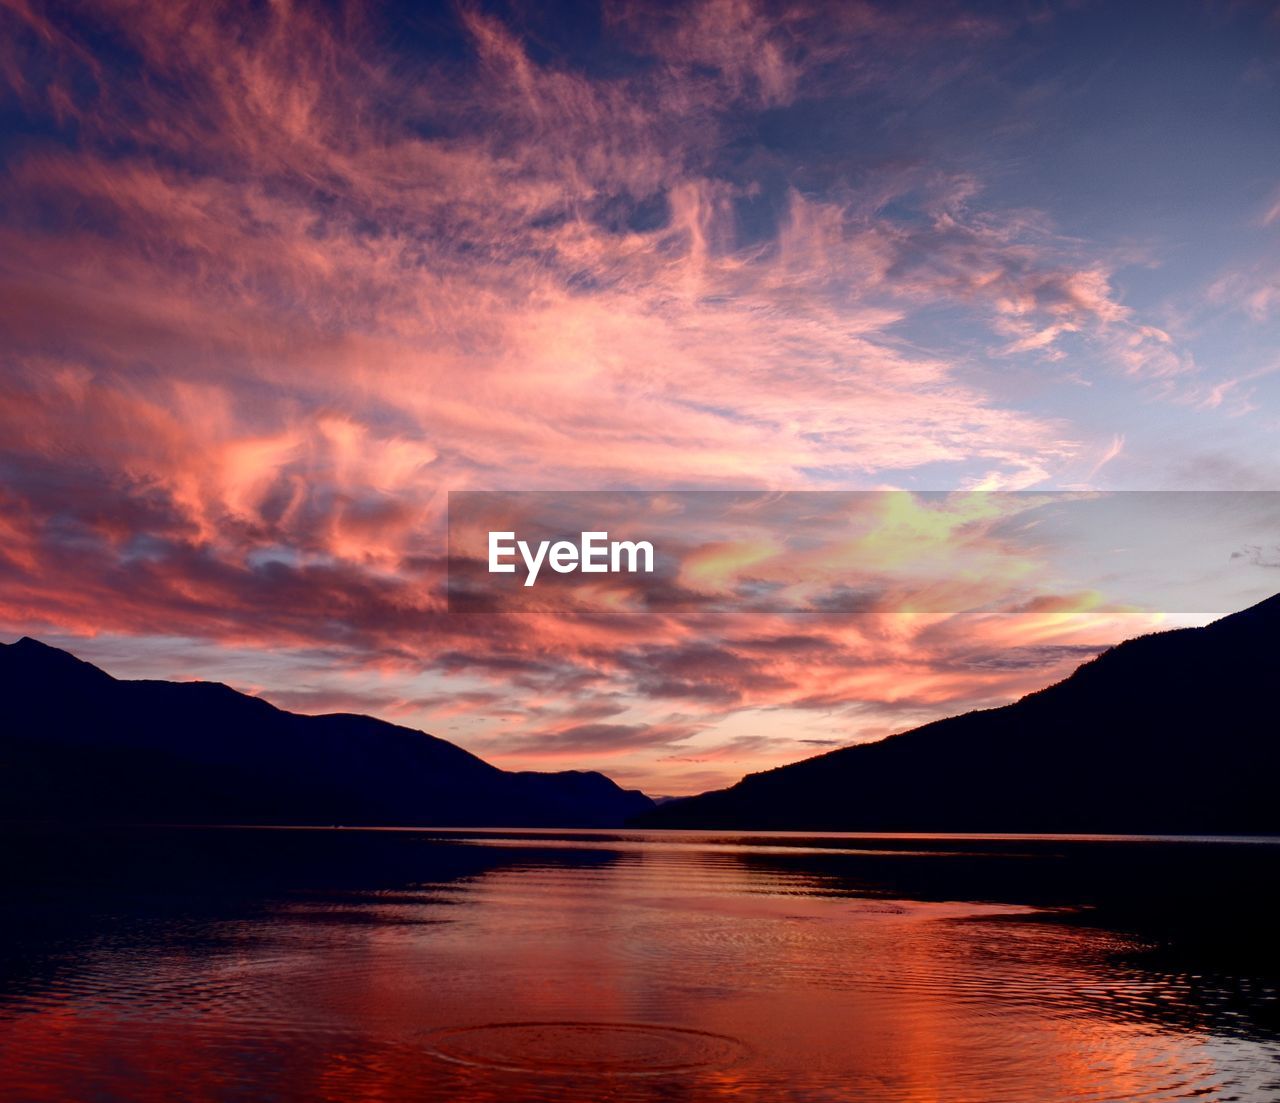 Epic lake sunset